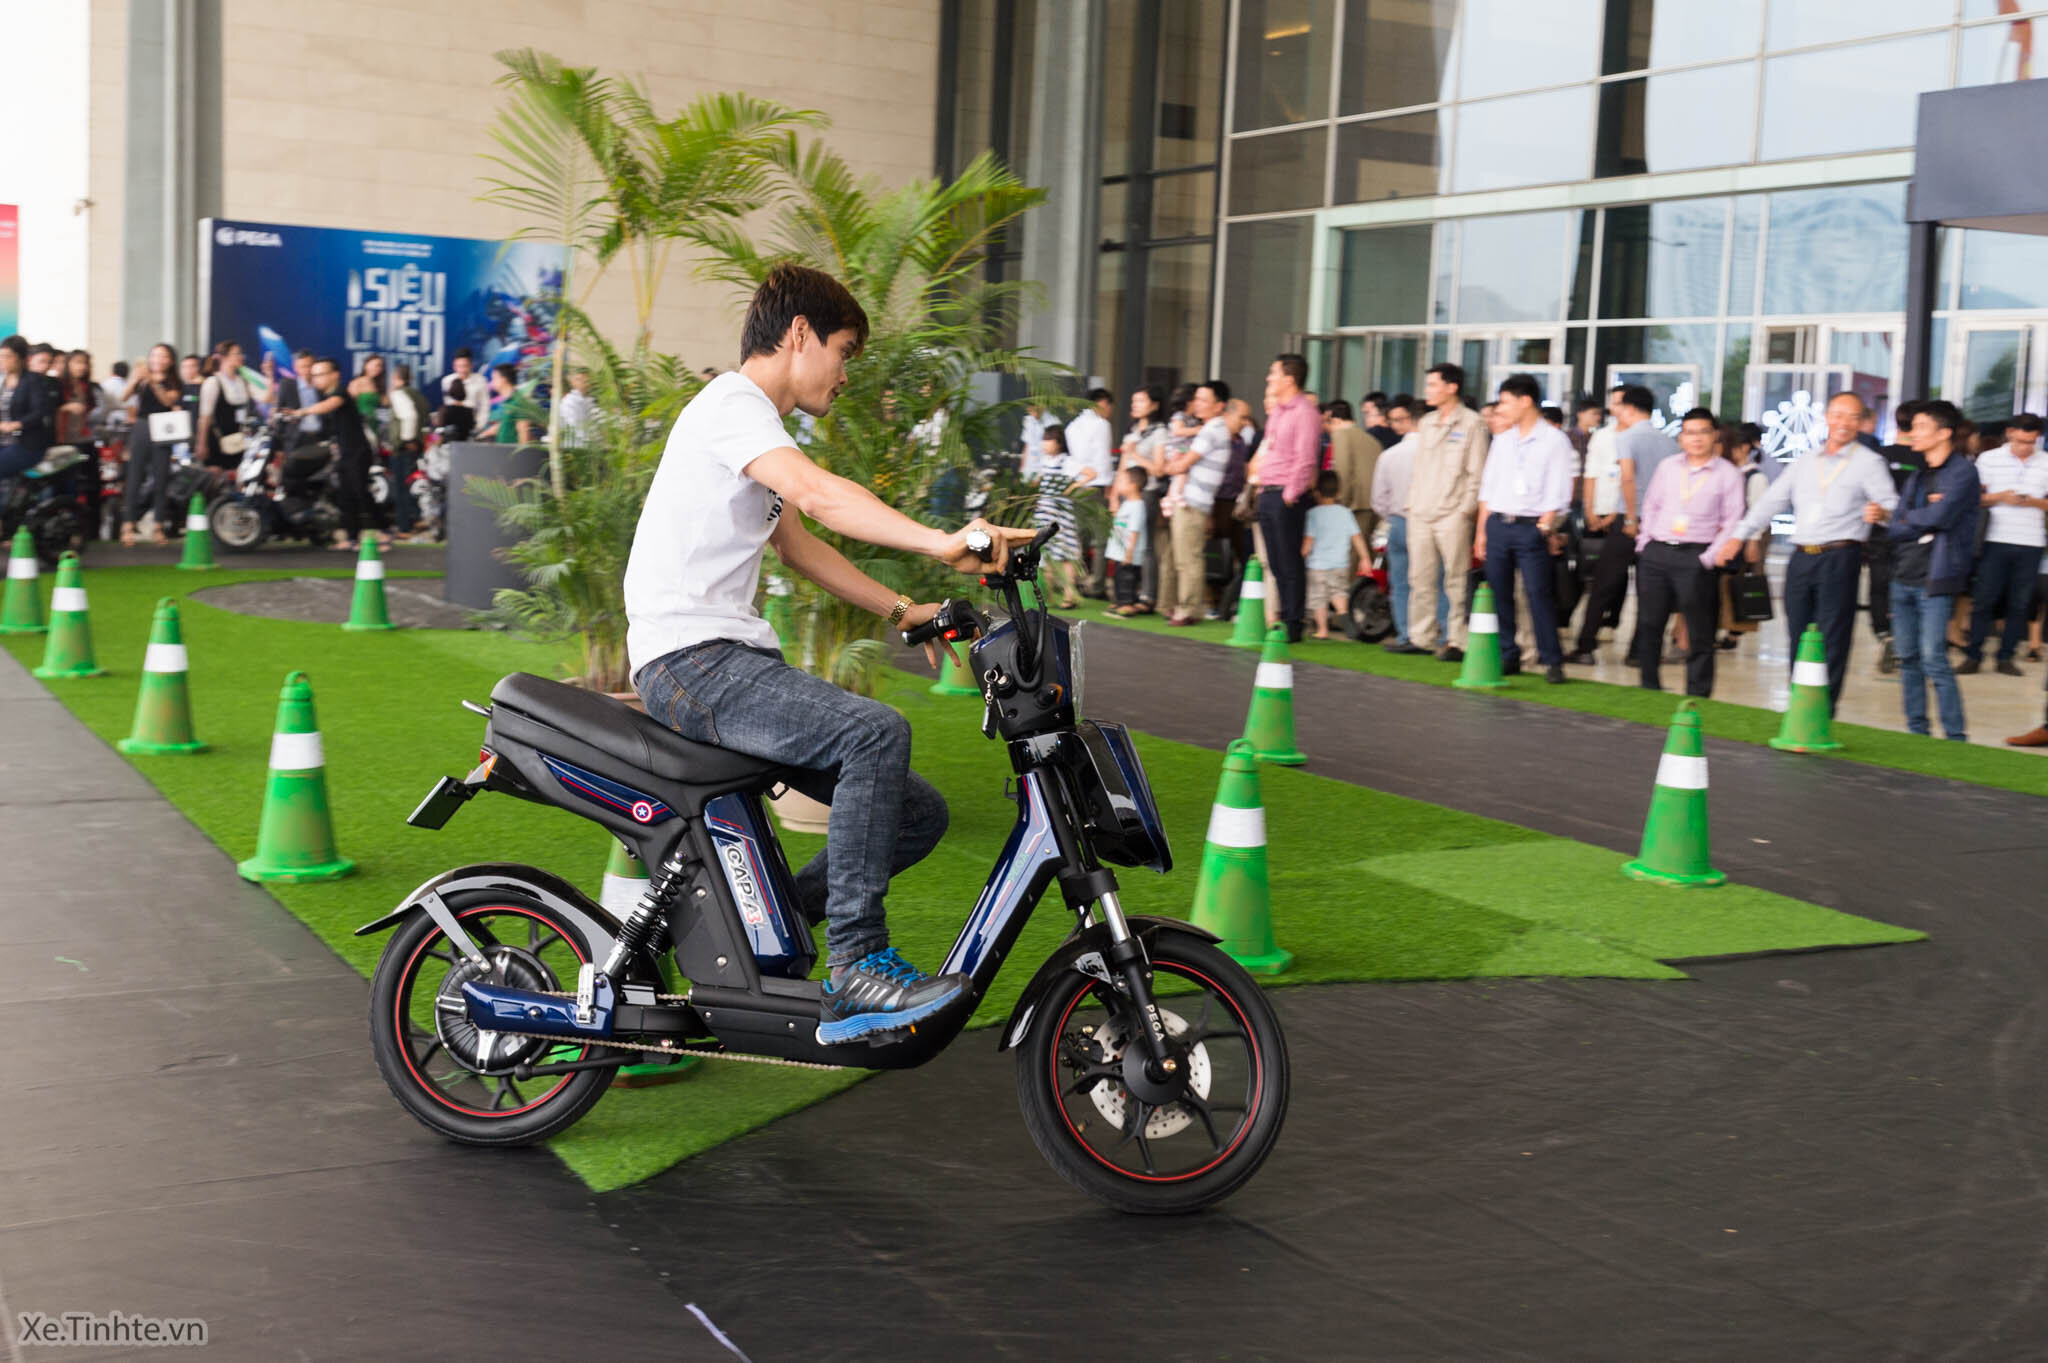 5 mẫu xe đạp điện Pega nam động cơ mạnh leo dốc tốt giá từ 10 triệu đồng | websosanh.vn